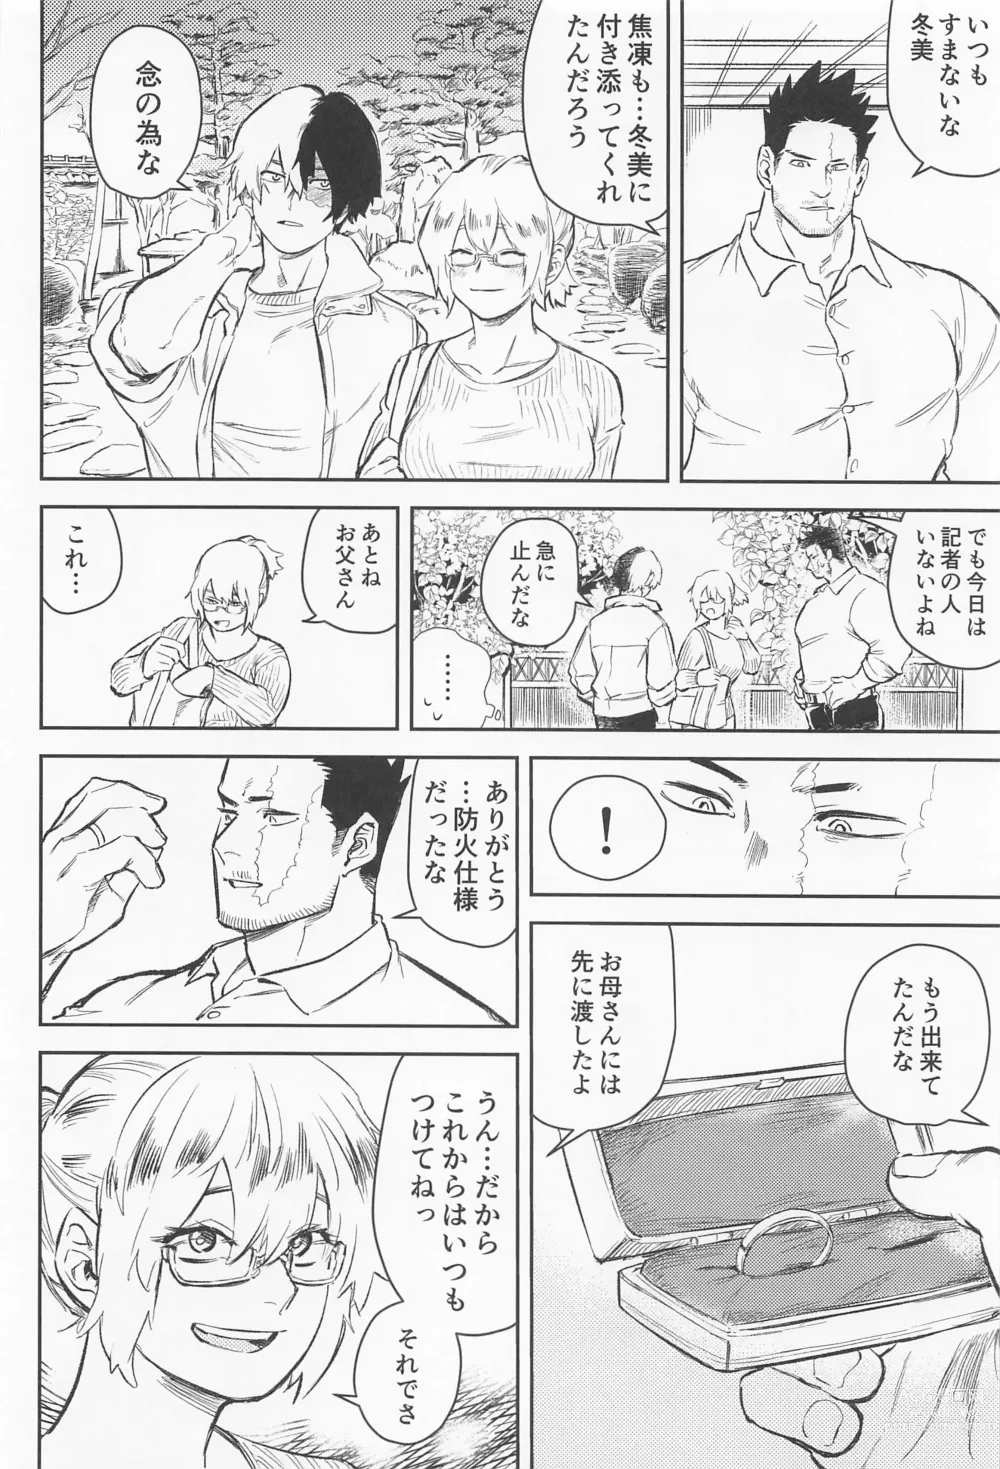 Page 11 of doujinshi Soredemo Aishitai